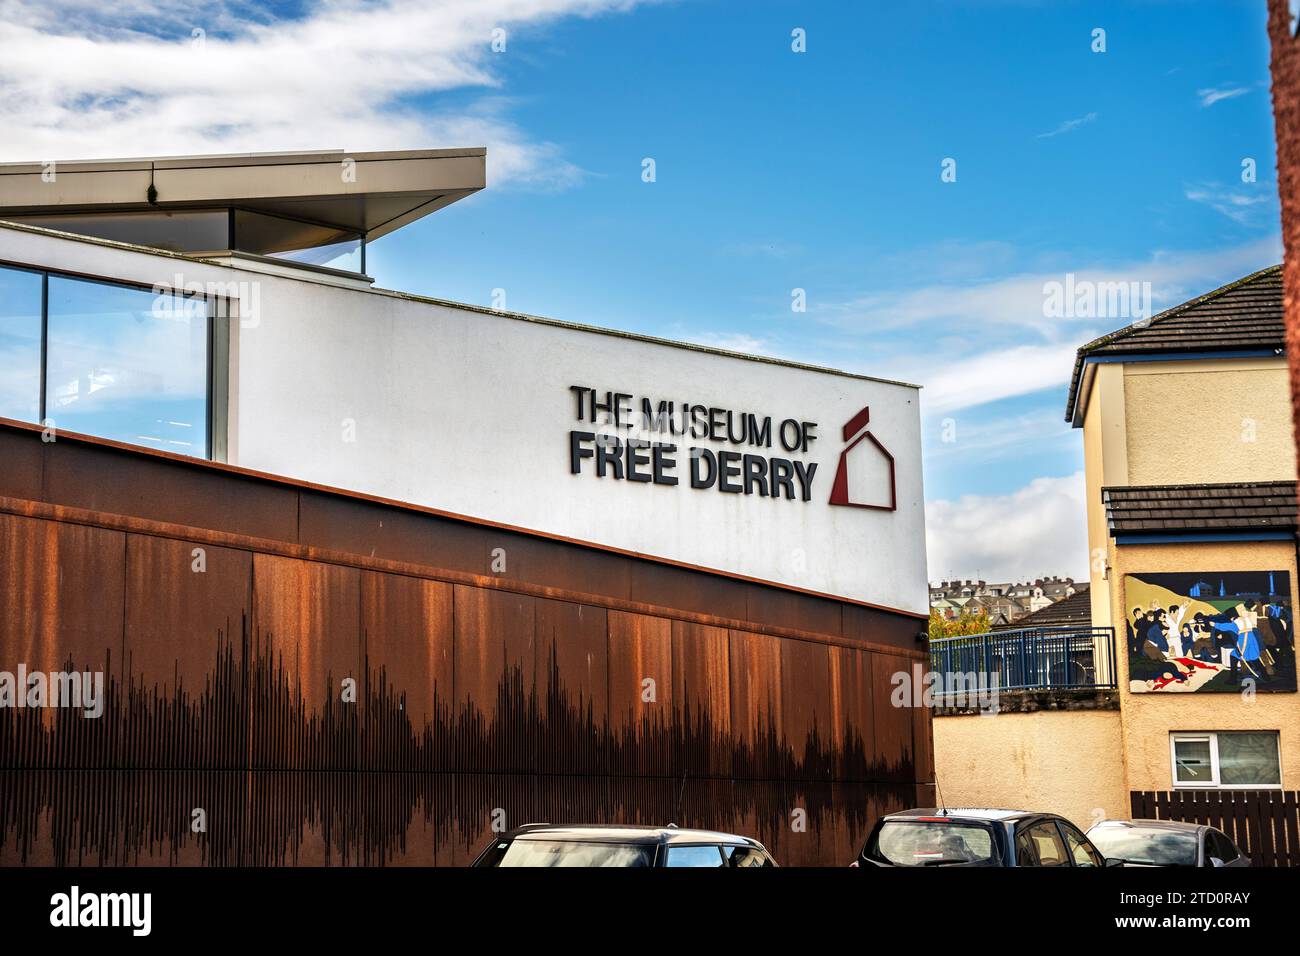 Veduta esterna del Museum of Free Derry su The Troubles, The Struggle for Civil Rights e Bloody Sunday, Derry, Irlanda del Nord Foto Stock